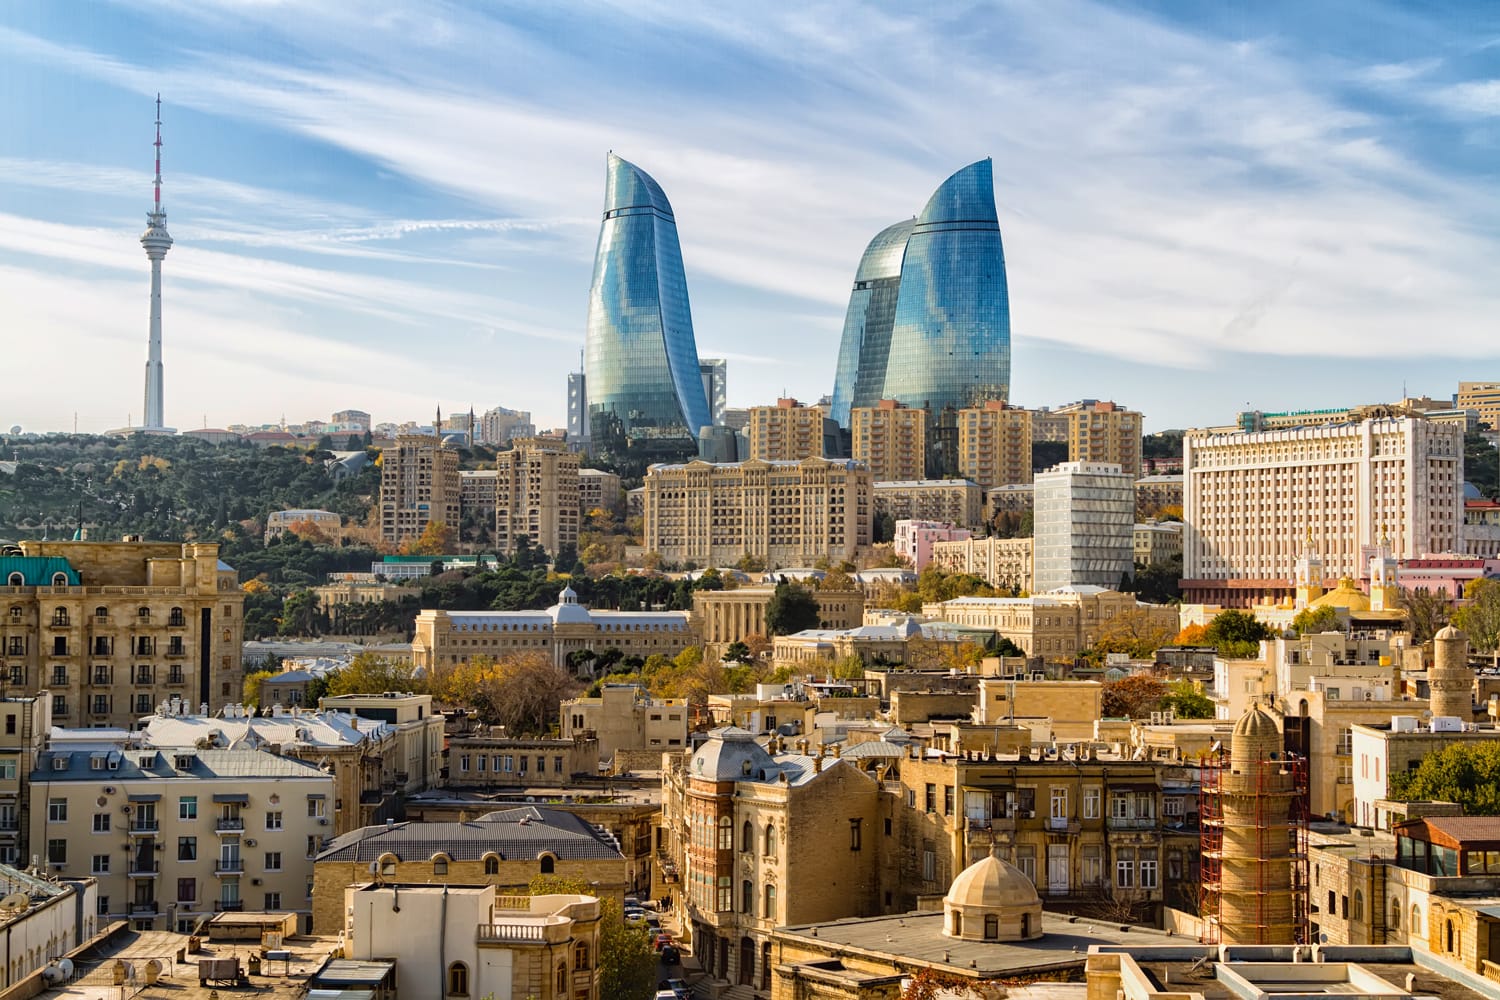 Pemandangan panorama Baku - ibu kota Azerbaijan yang terletak di tepi pantai Caspian See.